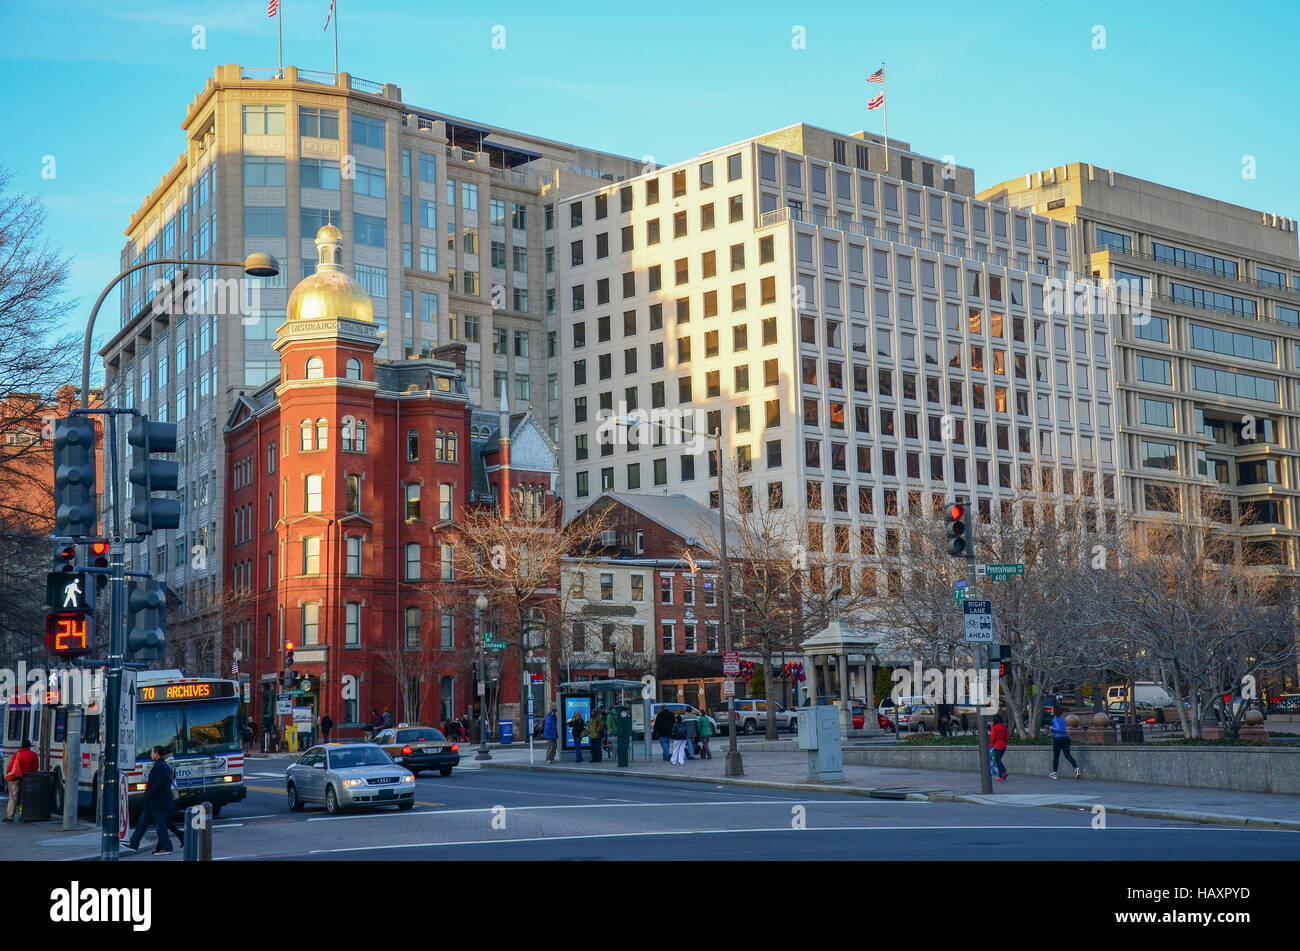 Dieses Clusters überleben Gebäude stammt aus den 1840er Jahren in die 1890er Jahre reichen und ist in Penn Quarter, Washington DC. Stockfoto